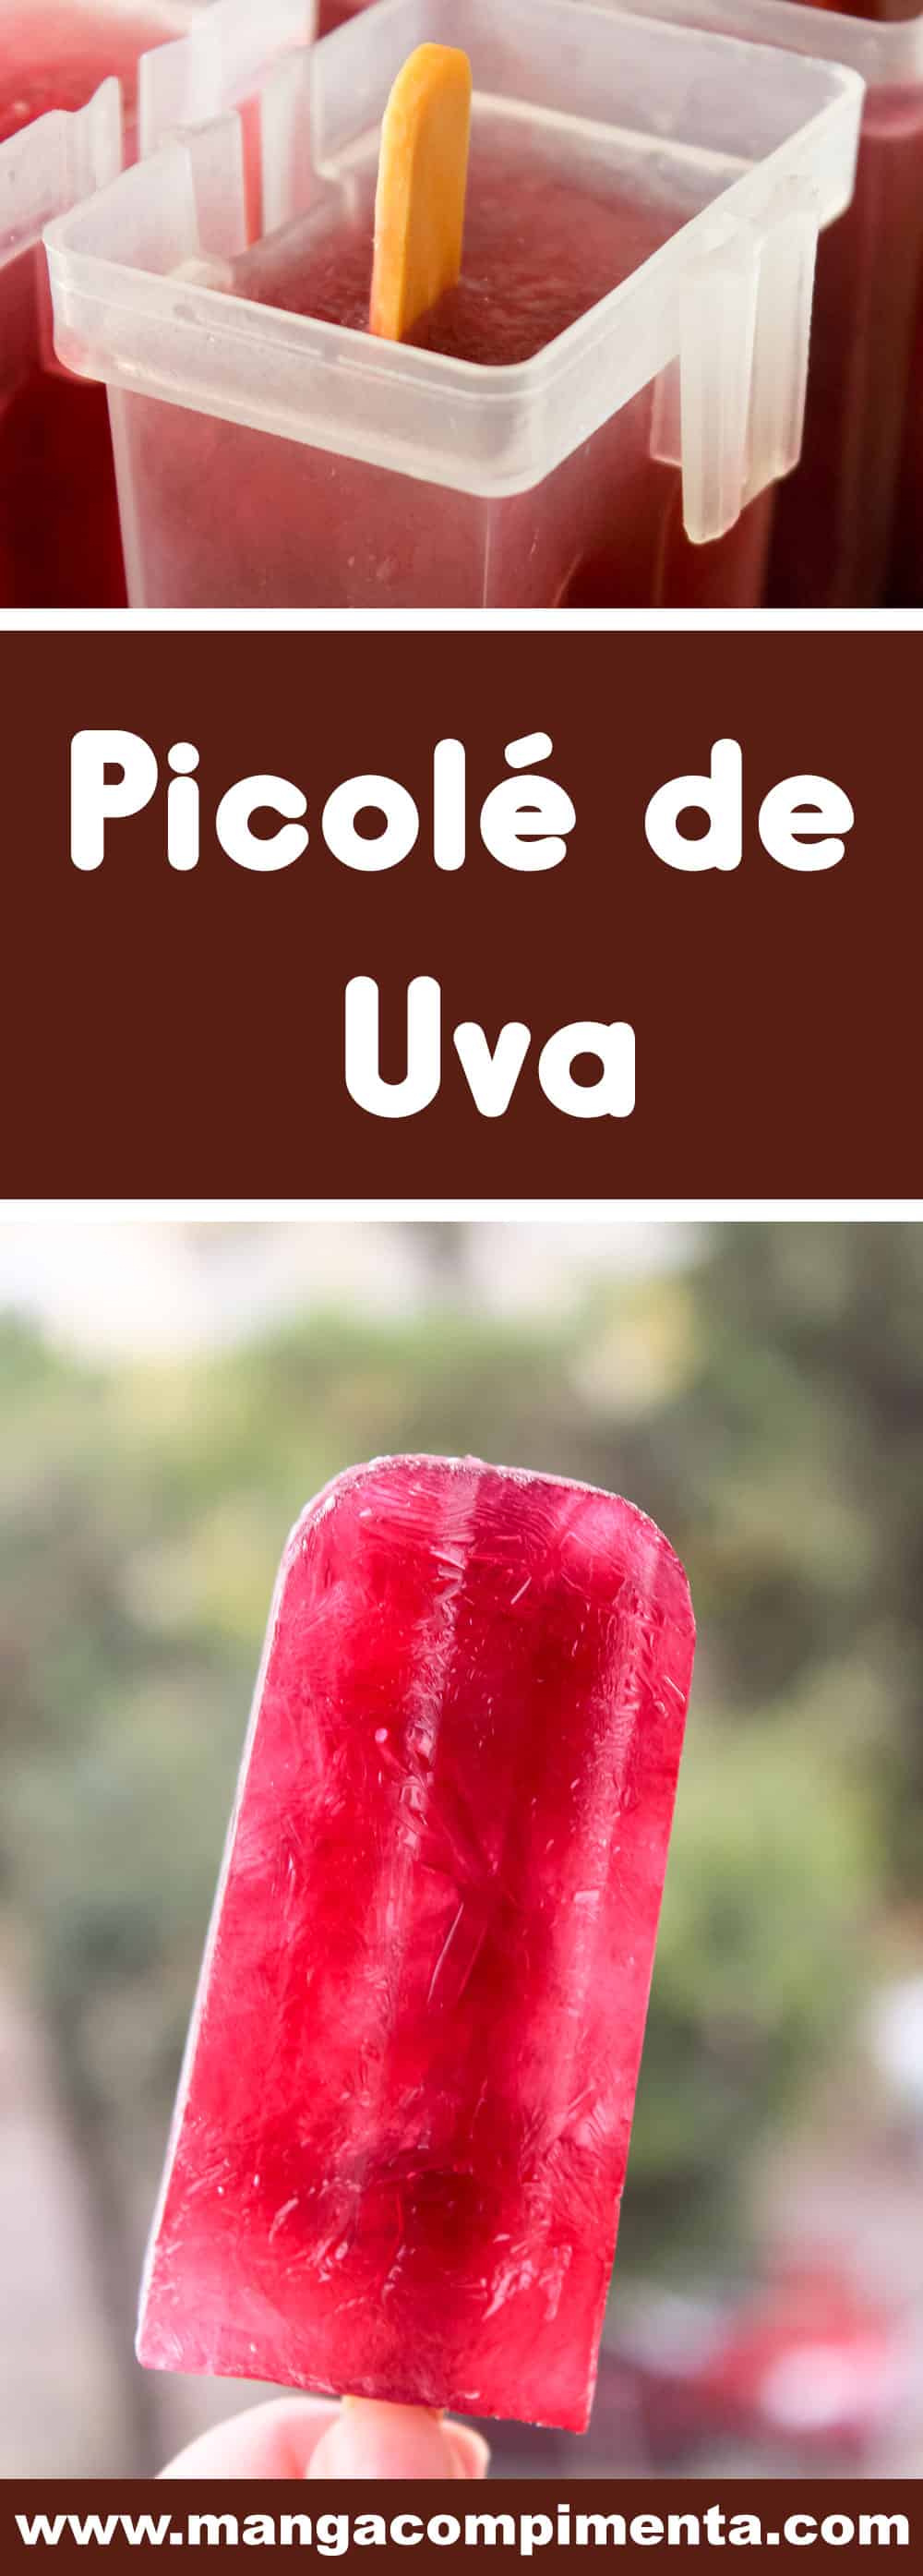 Receita de Picolé de Uva Caseiro - prepare em casa, principalmente nos dias quentes!